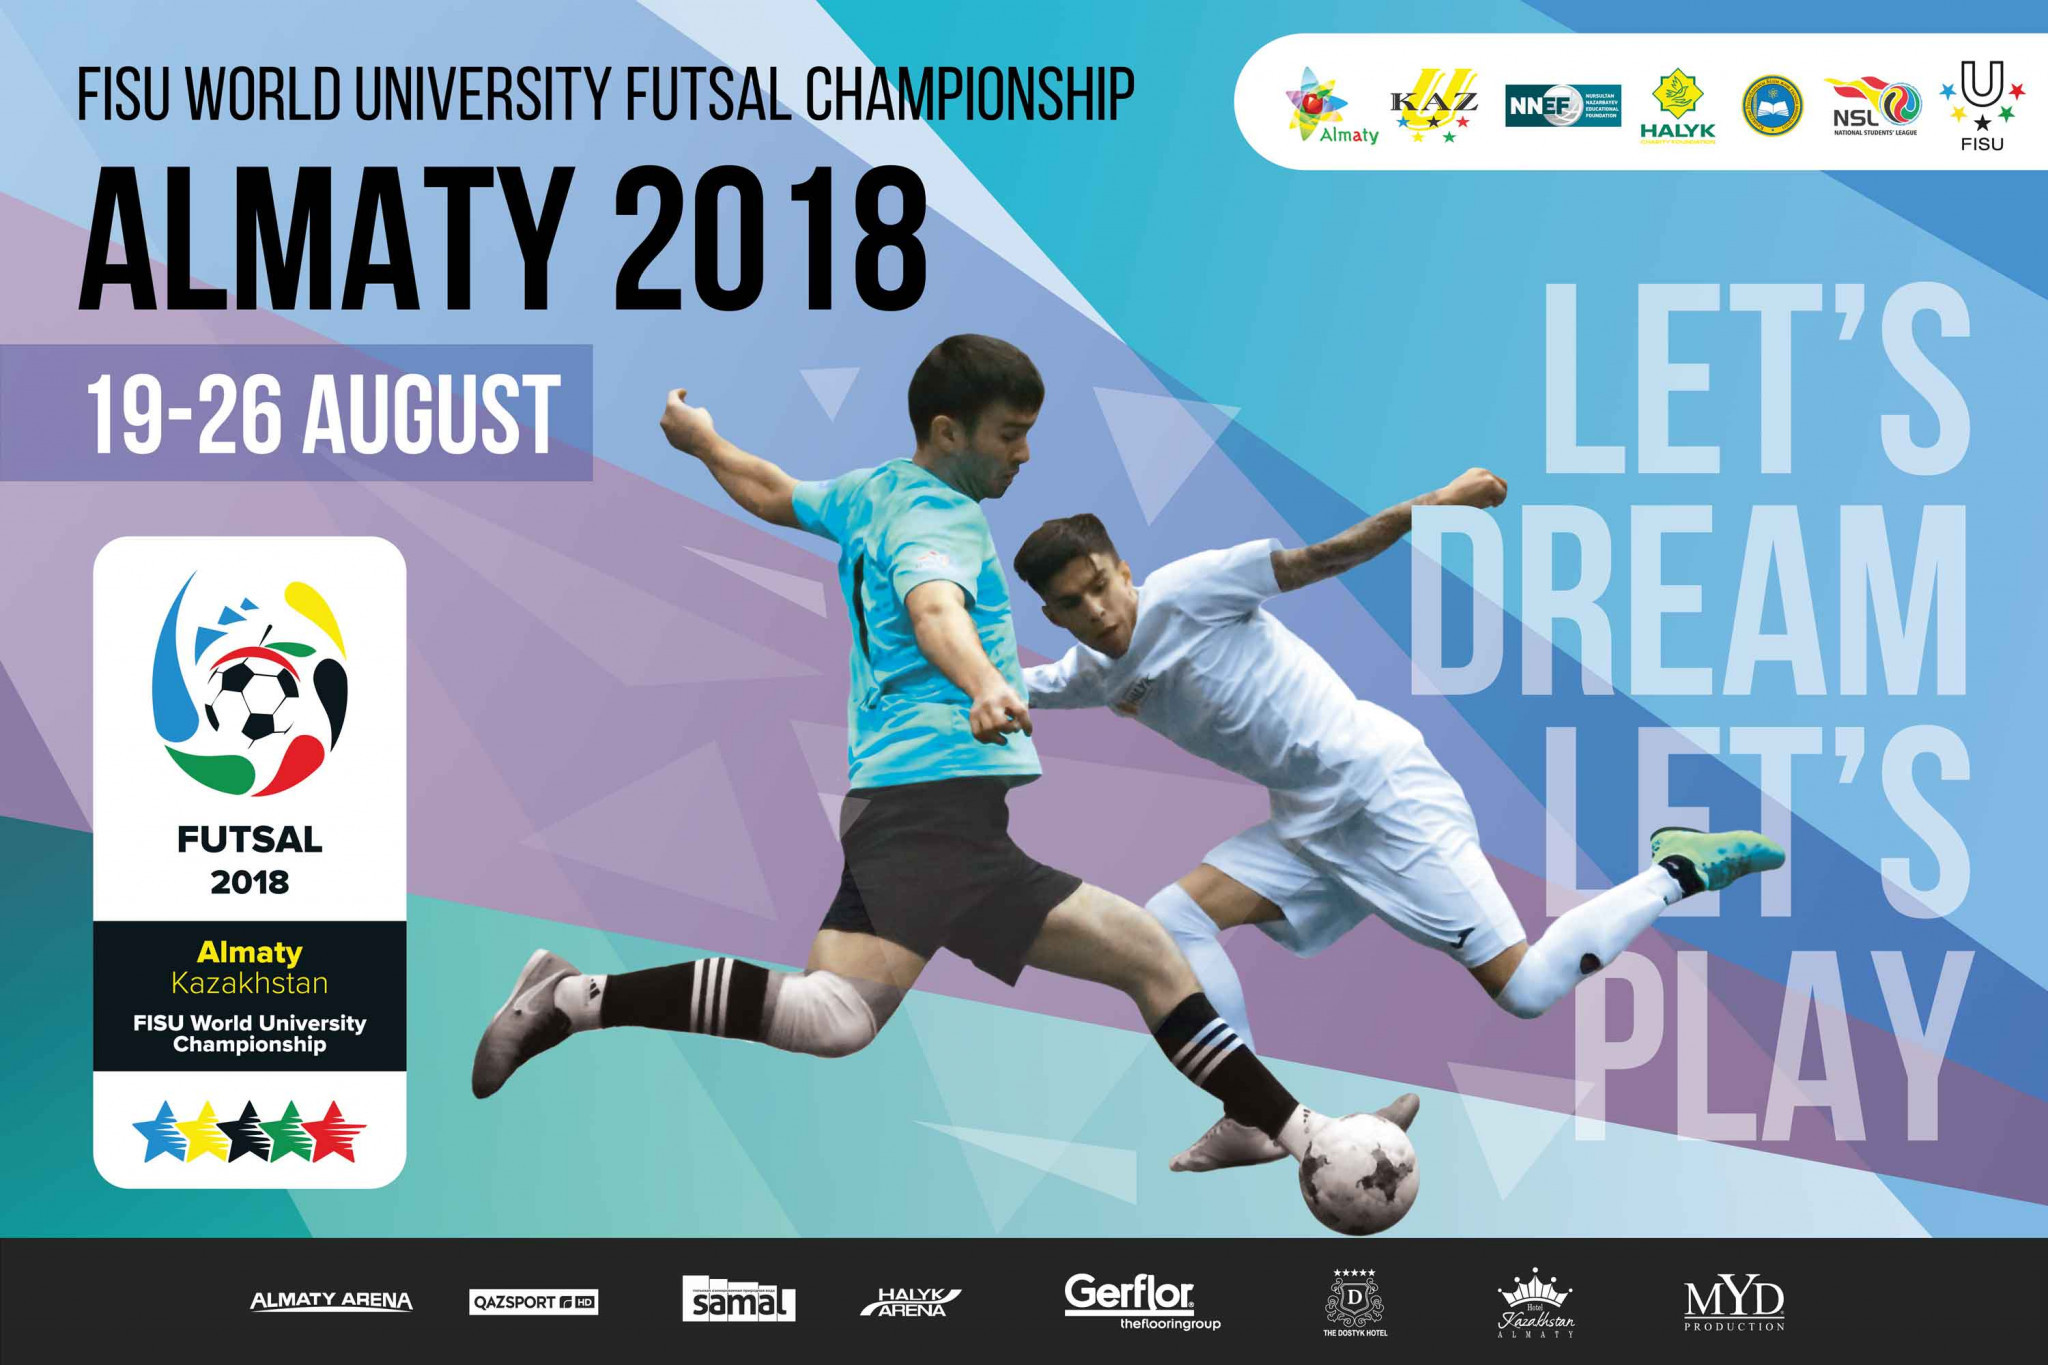 Almaty to host FISU World University Futsal Championships 